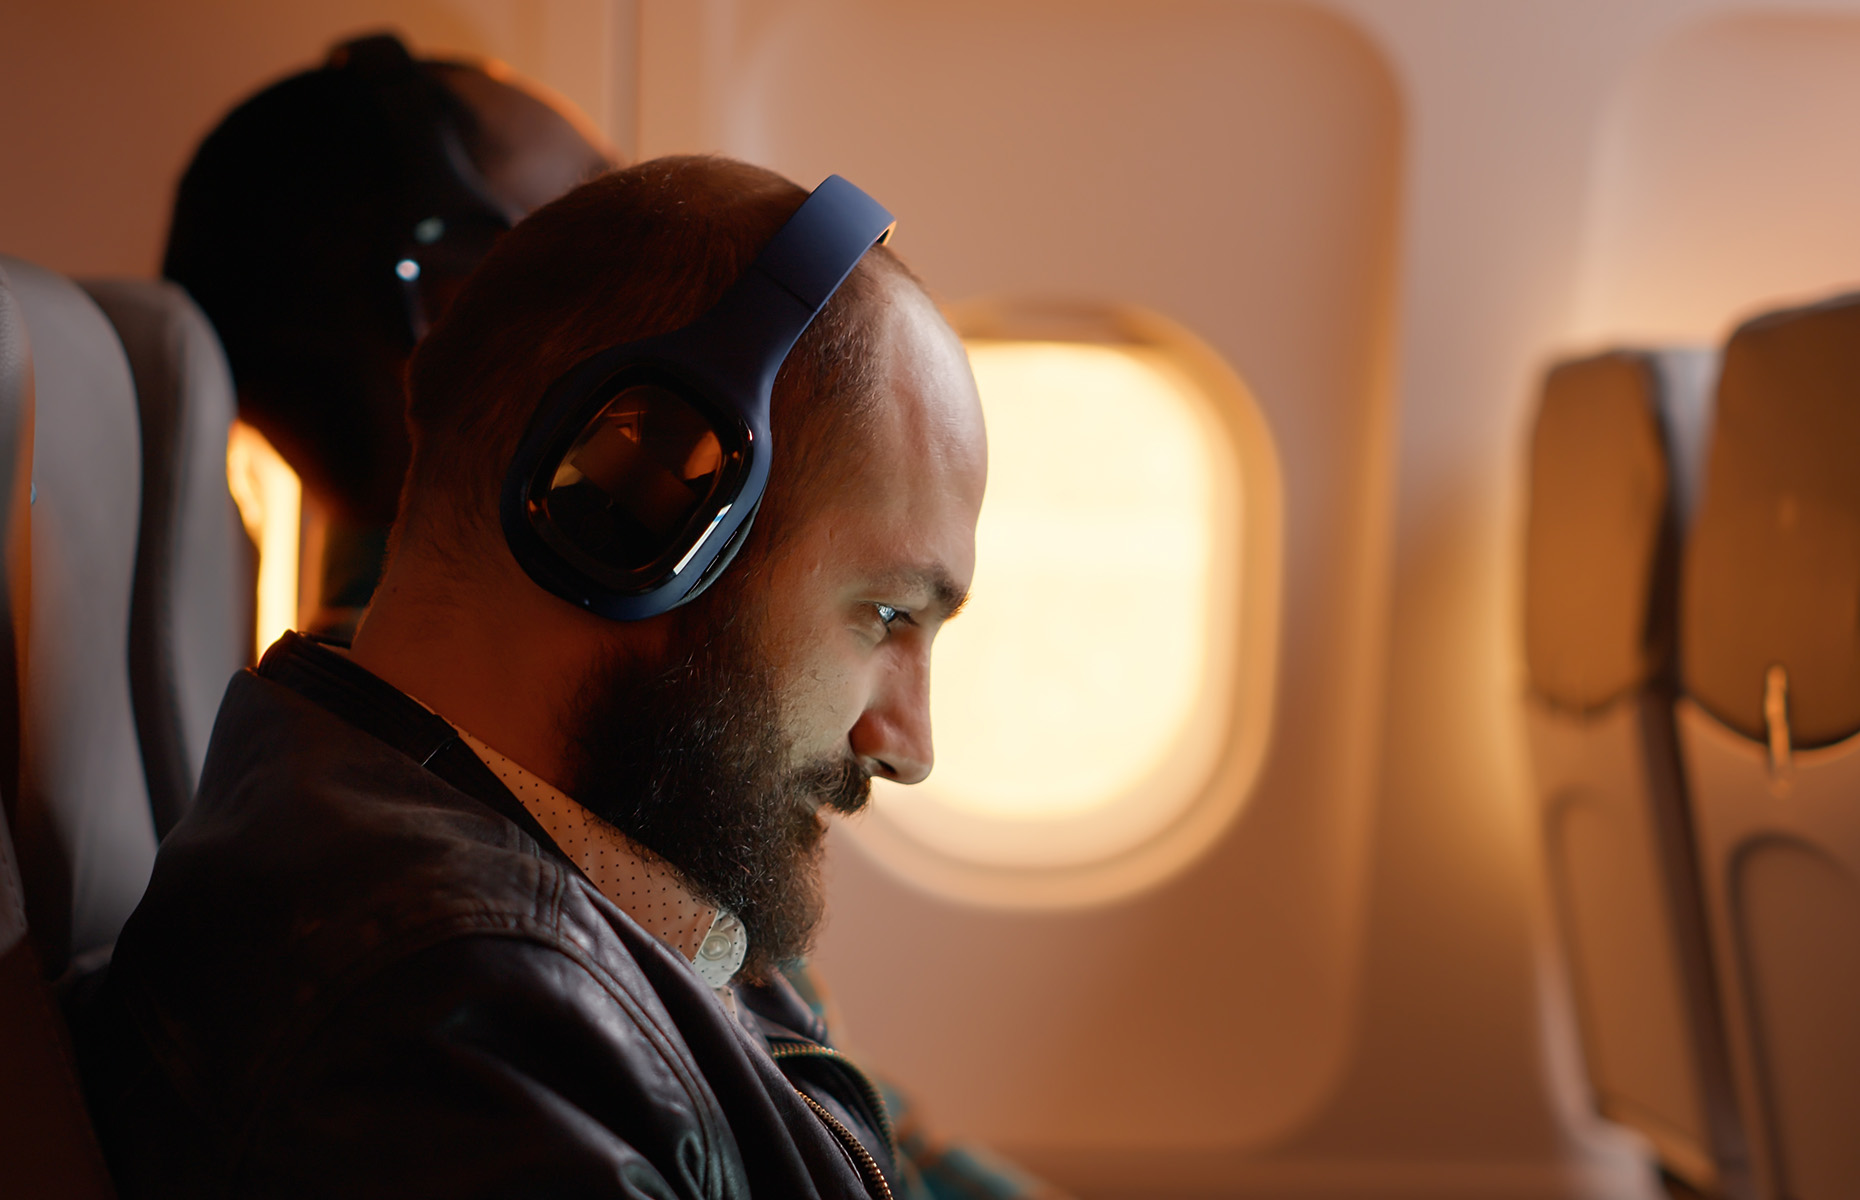 Man with headphones on (Image: DC Studio/Shutterstock)